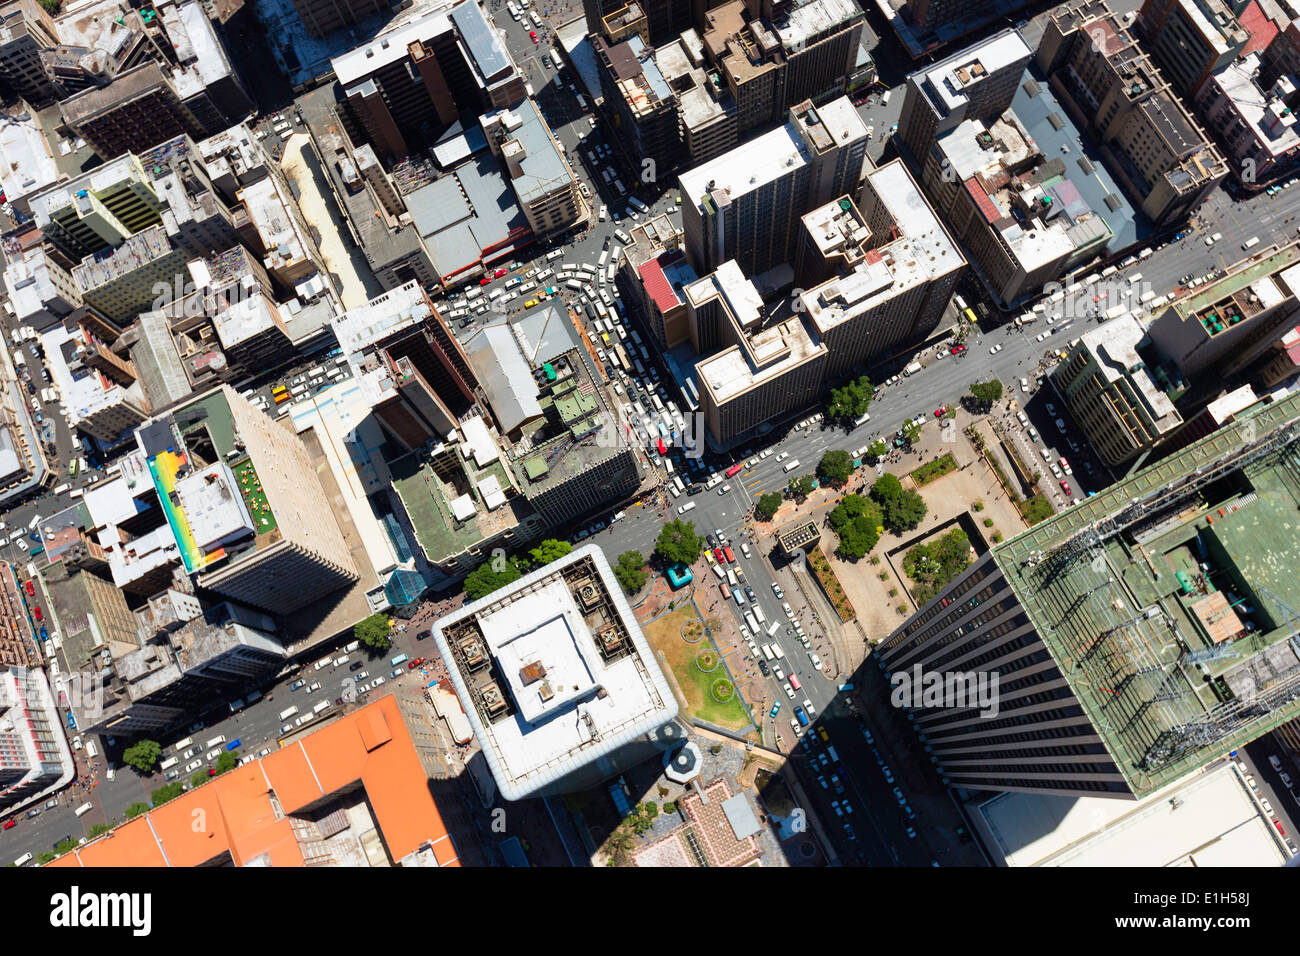 Vue aérienne de Jeppe Street quartier central des affaires de Johannesburg en gratte-ciel towers Sanlan bâtiment Centre Afrique du Sud Banque D'Images